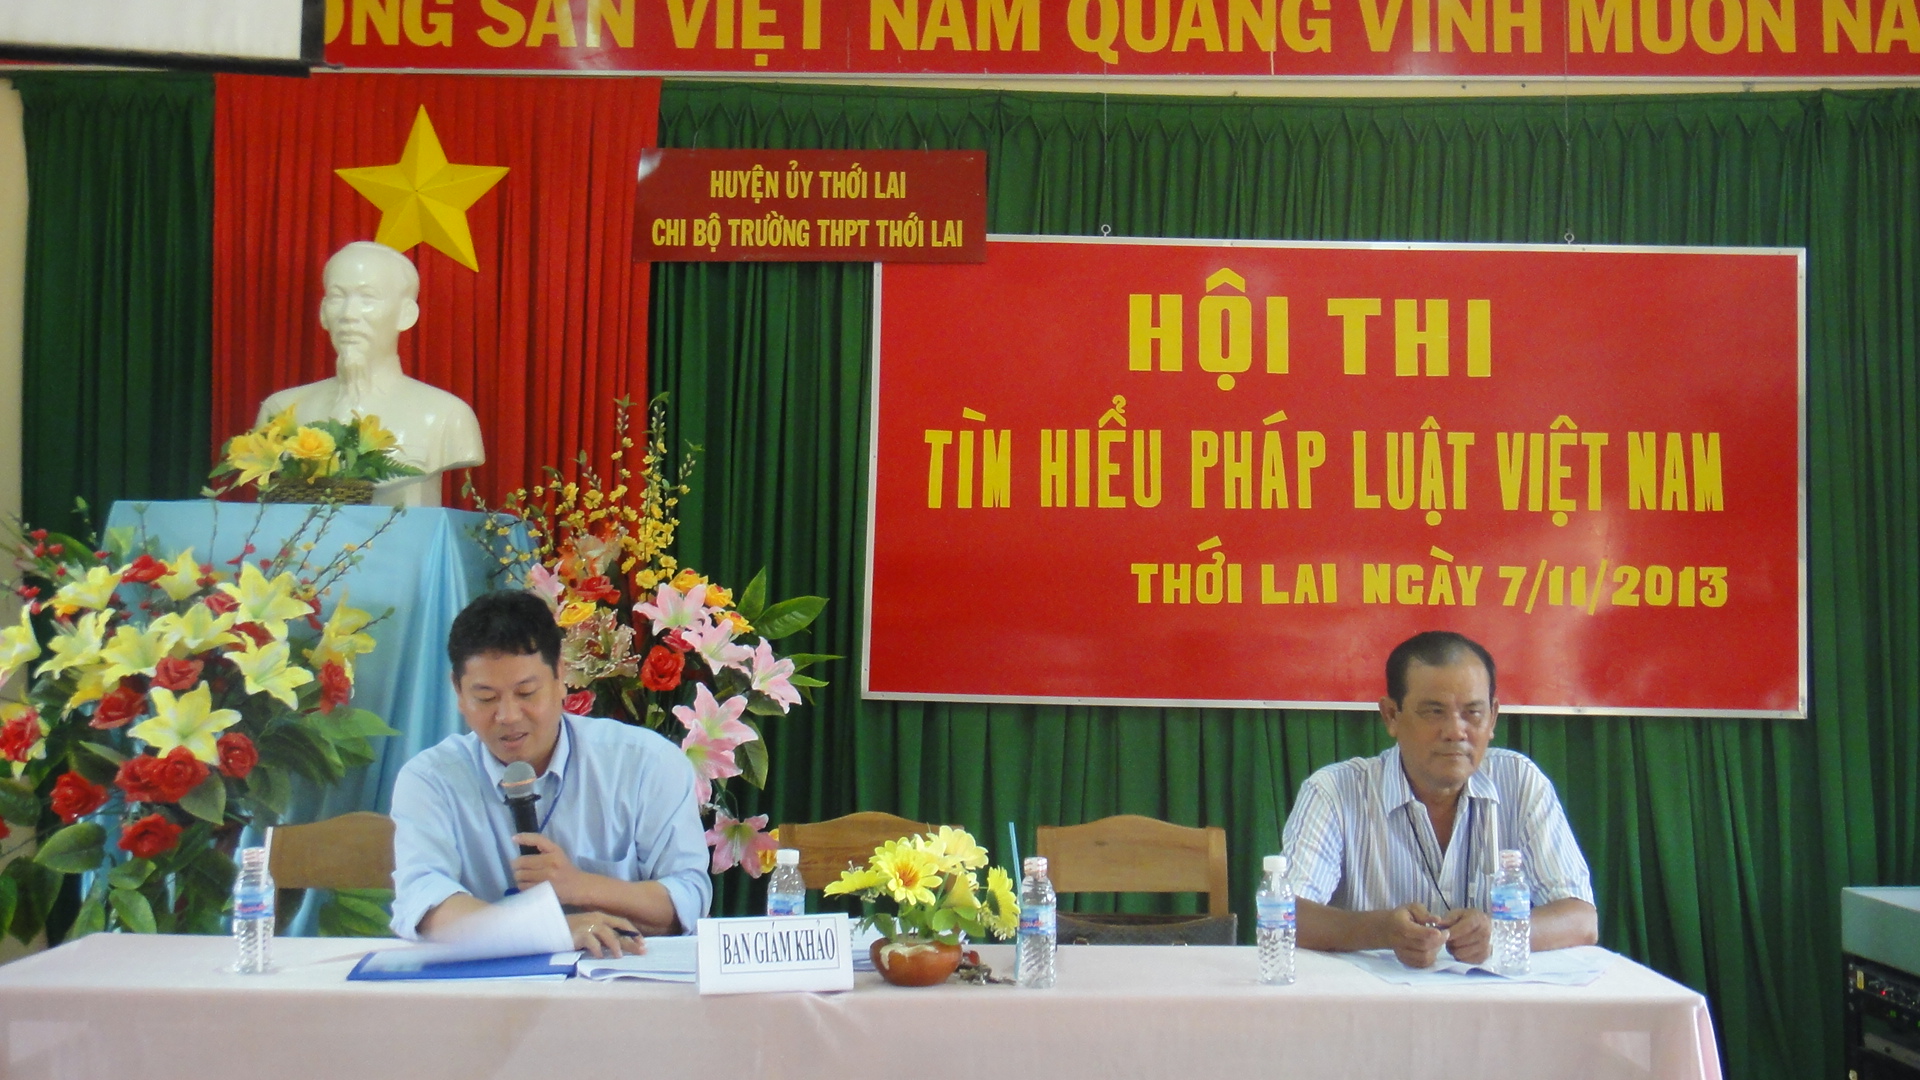 Hội thi tìm hiểu pháp luật Việt Nam